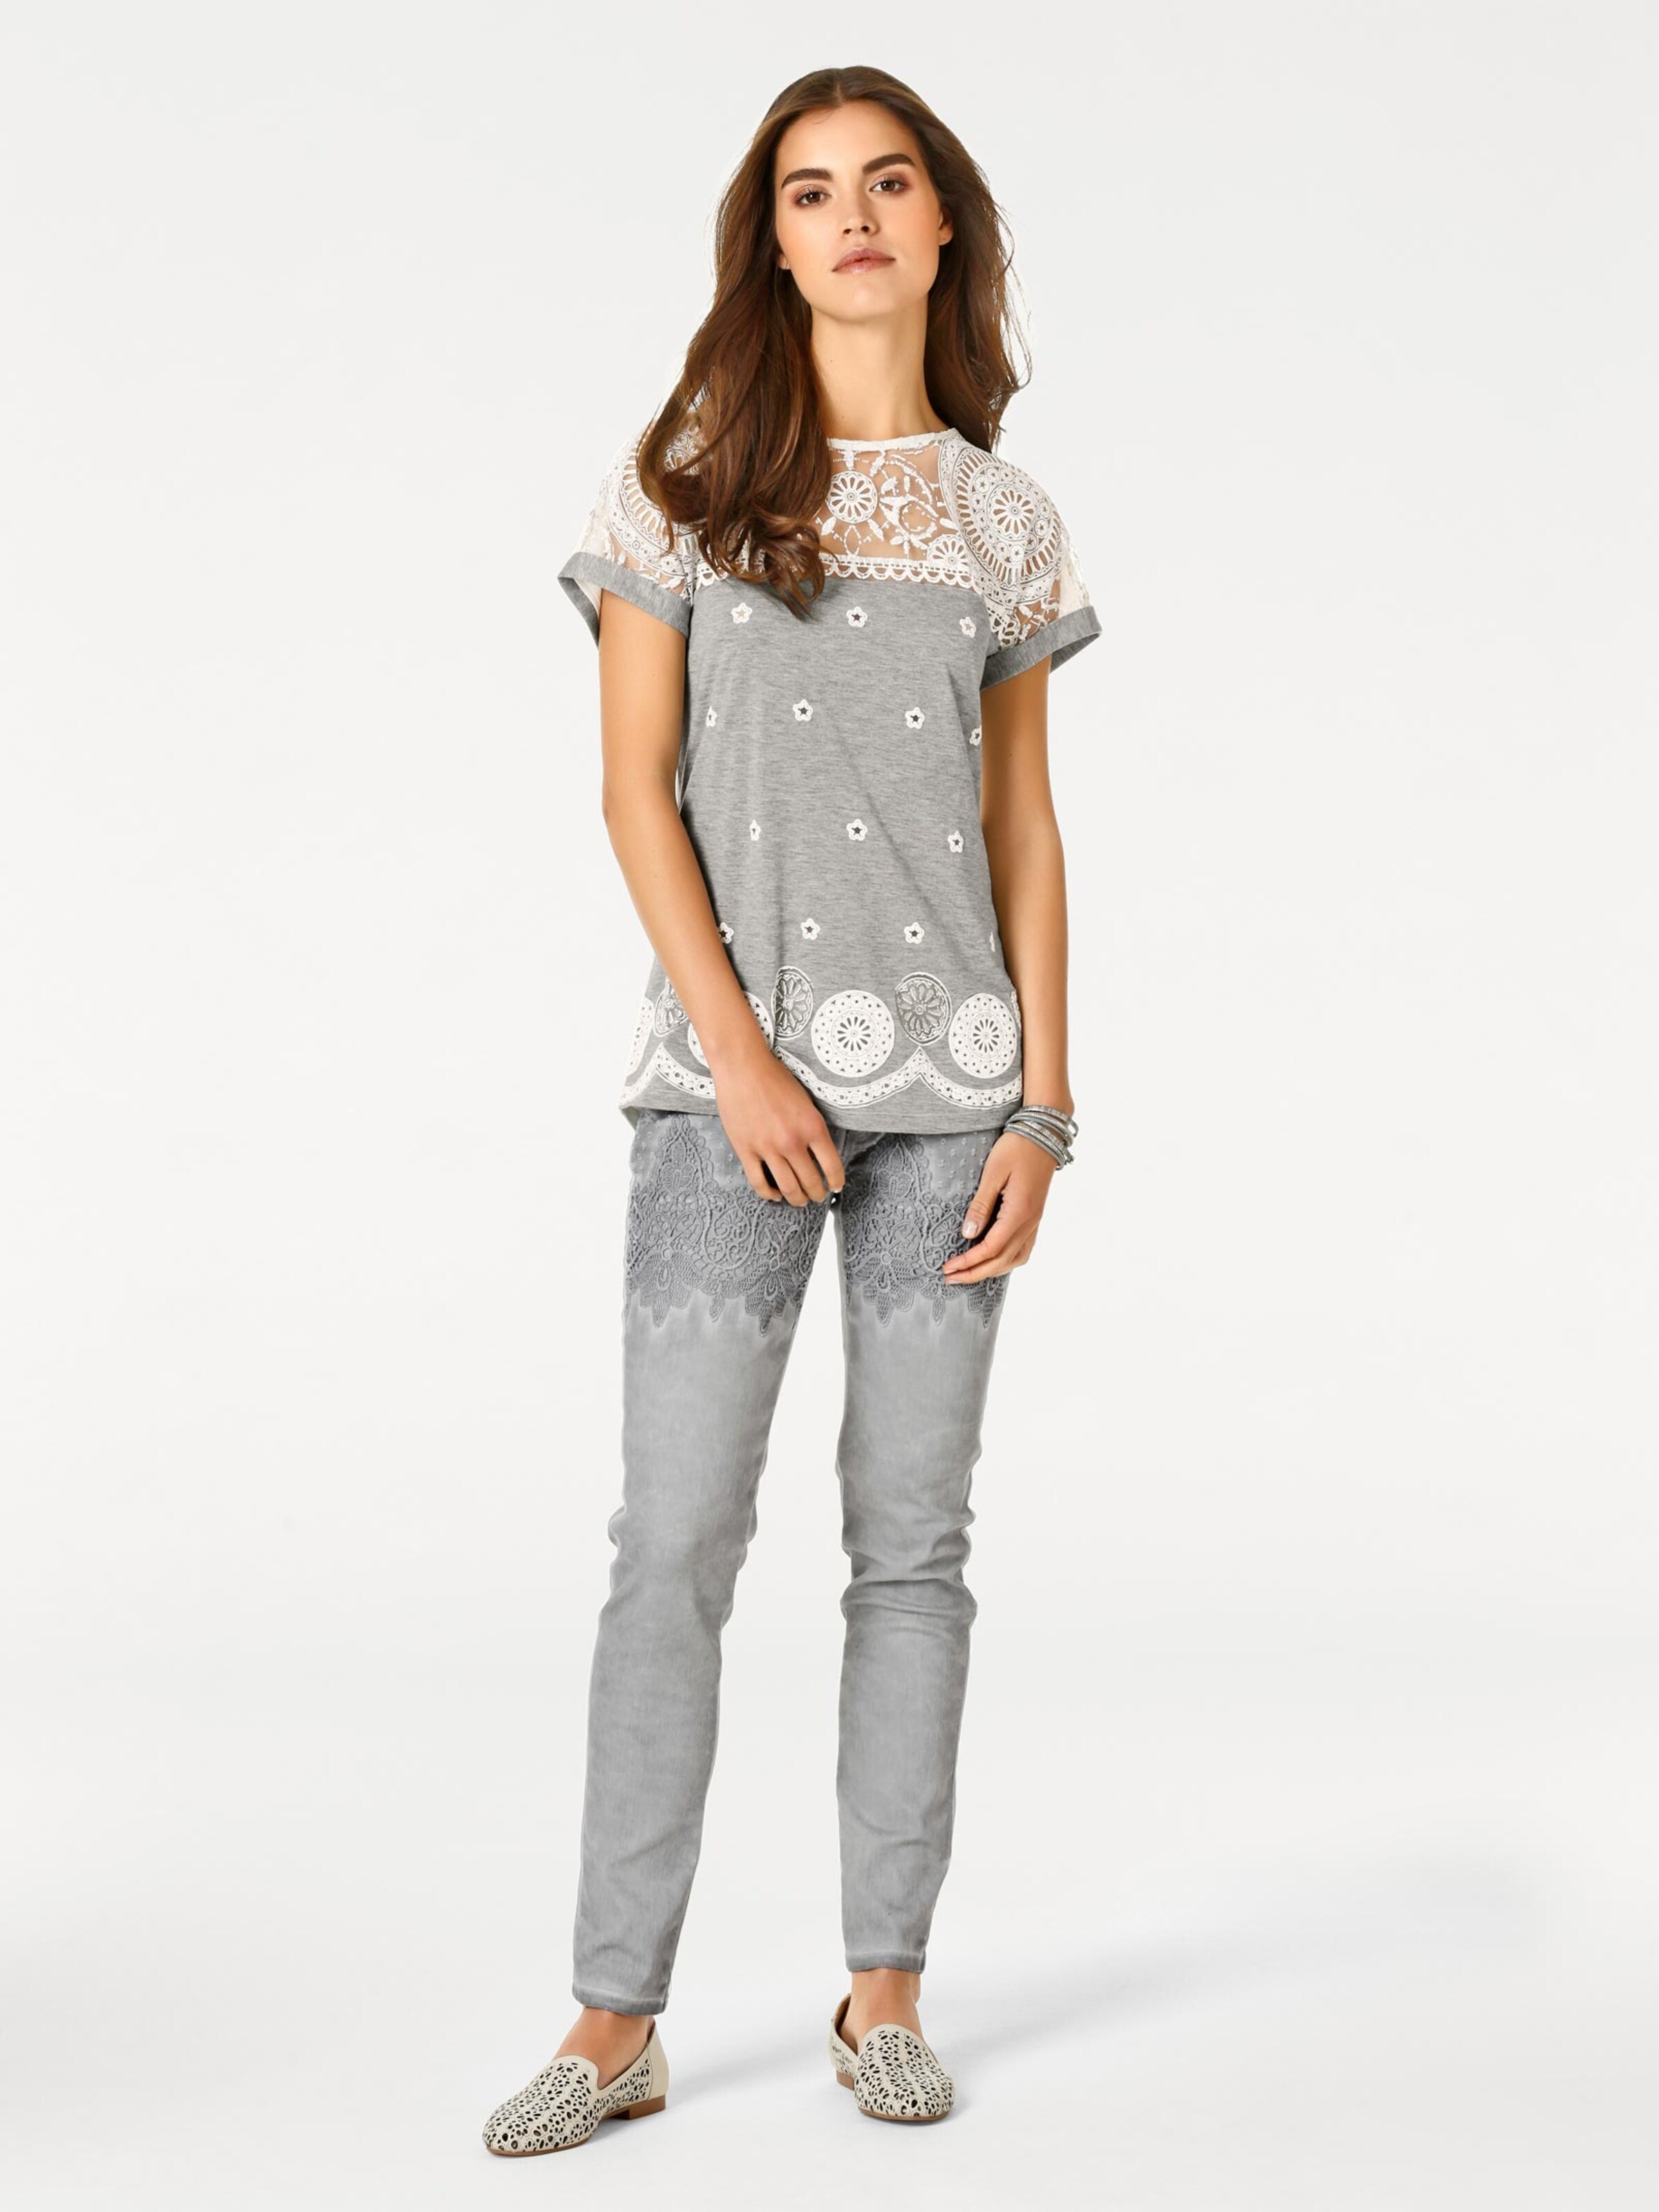 Damenmode Shirts Linea Tesini Spitzen-Shirt in grau 